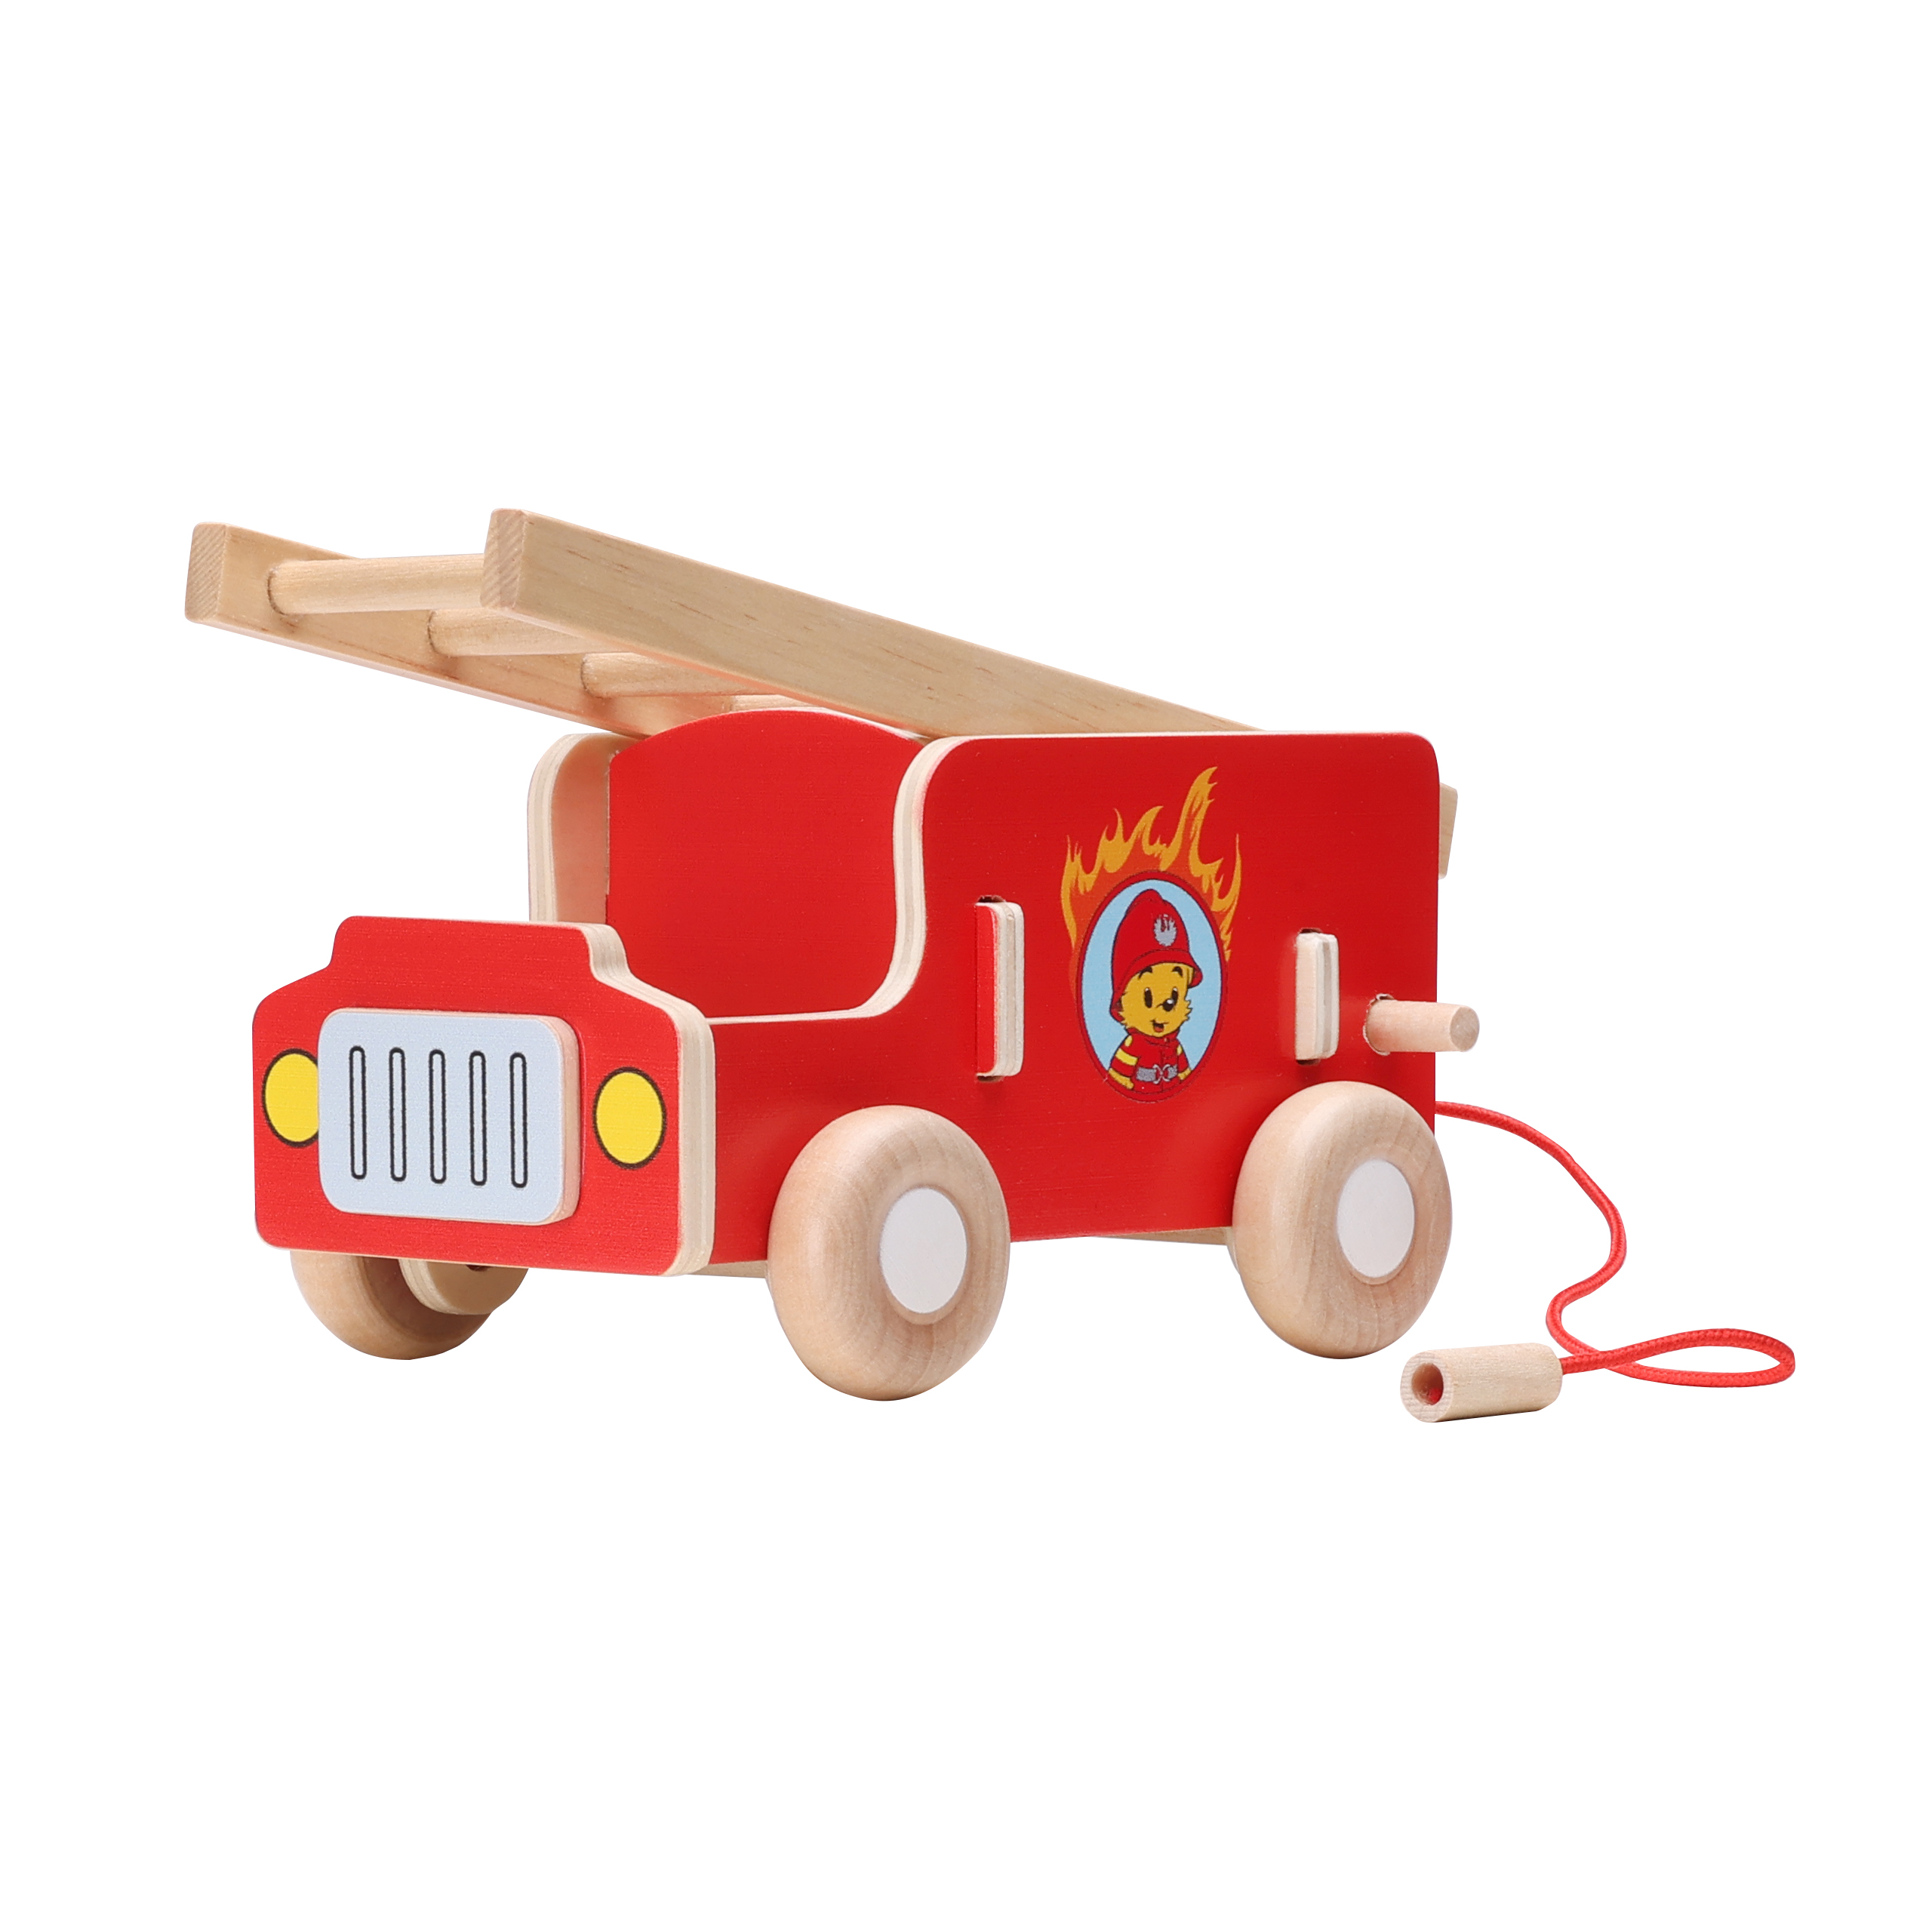 Puulelut bamse leluauto puinen paloauto